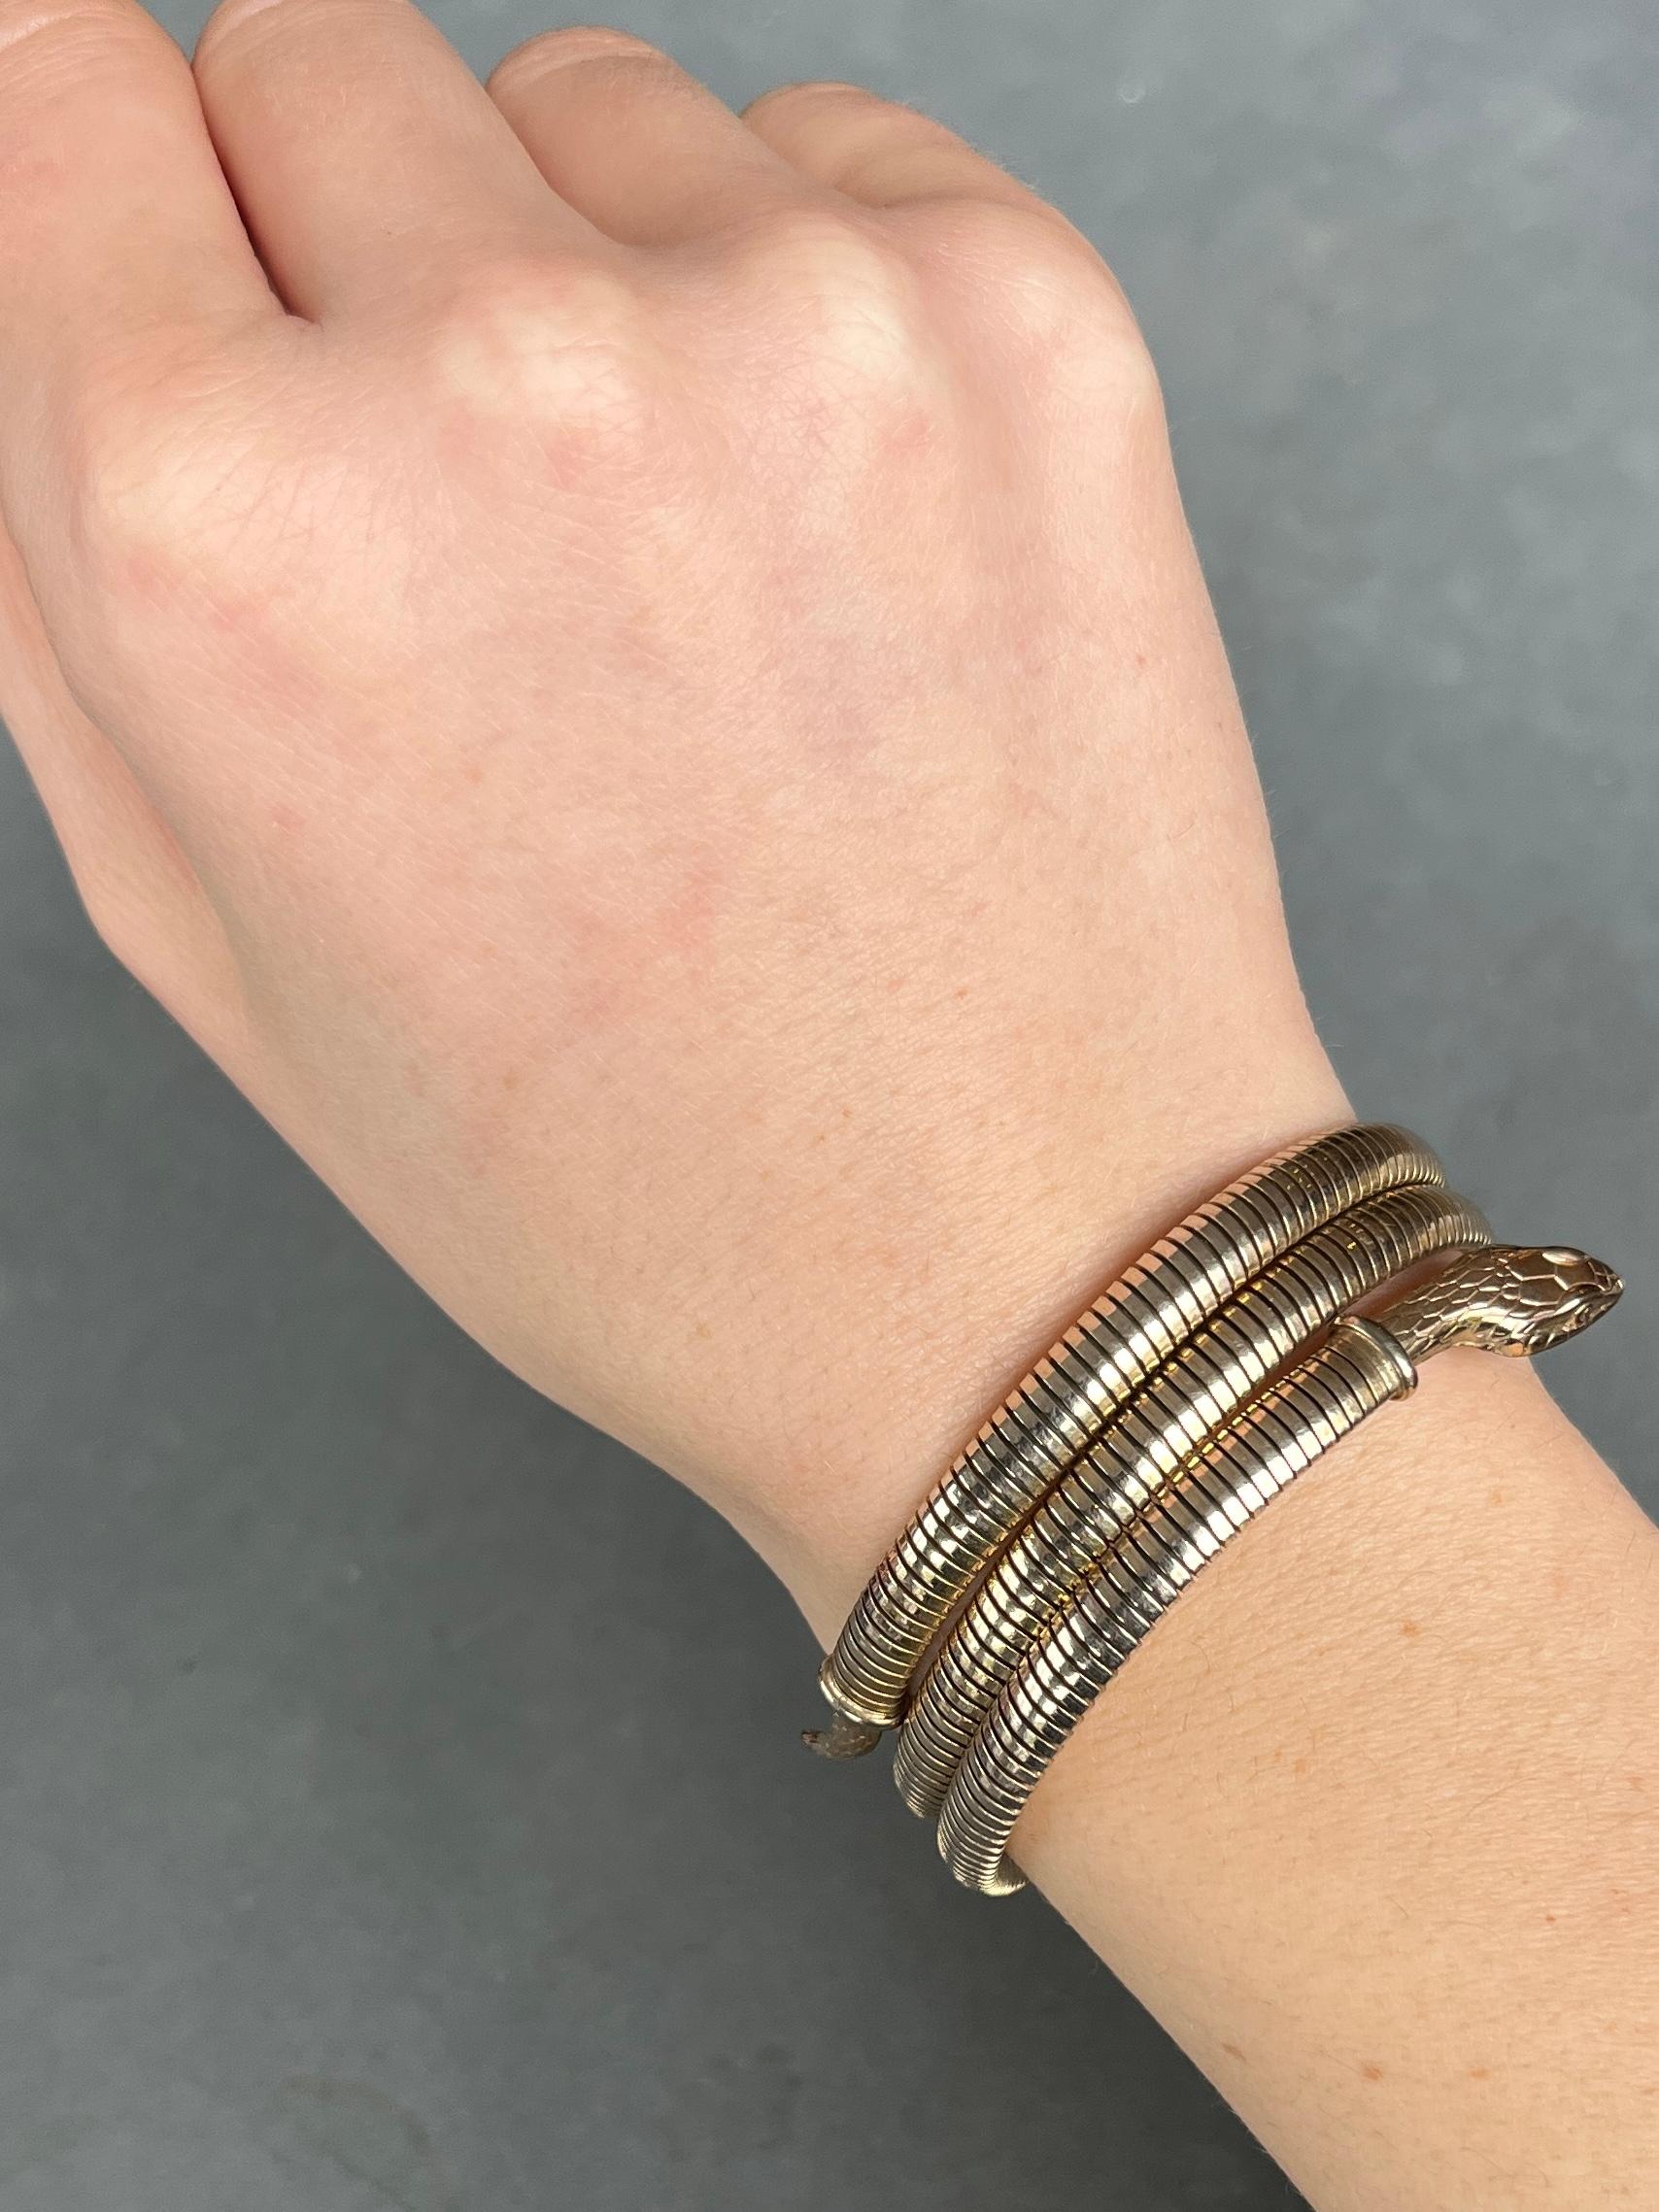 Ce charmant bracelet serpent en or roulé est monté sur acier et s'adapte donc à tous les poignets. Il s'agit d'or laminé, ce qui signifie que le bracelet est recouvert d'une fine couche d'or. 

Diamètre intérieur : 55 mm
Largeur du bracelet (au